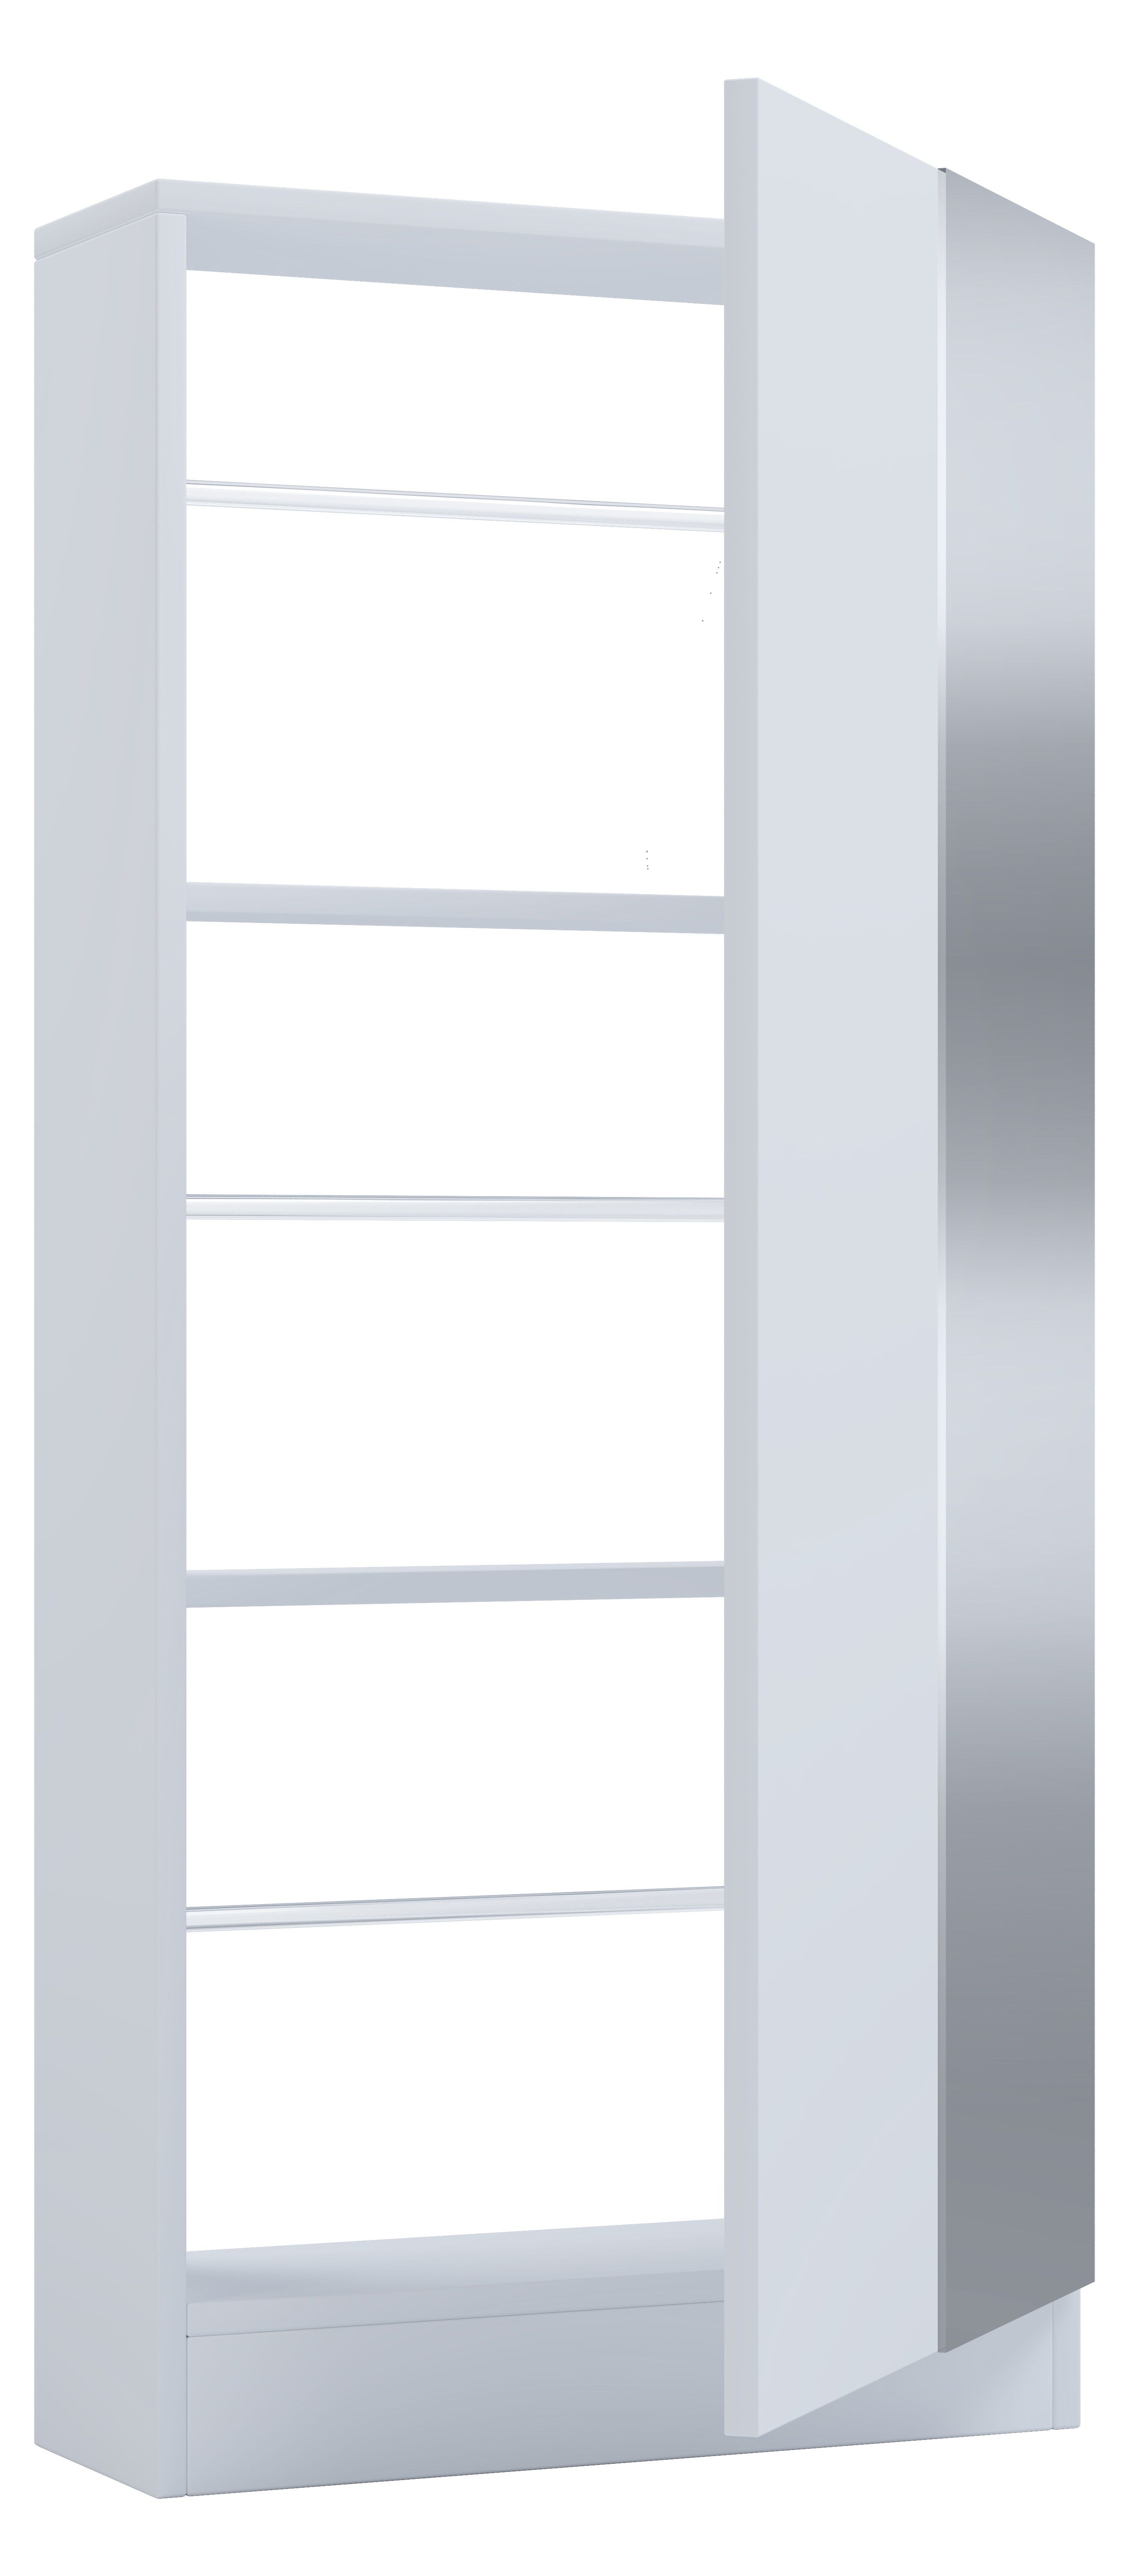 VCM NORDIC Fulisa skoskåp, m. spegel på dörr, 2 hyllplan - vitt trä